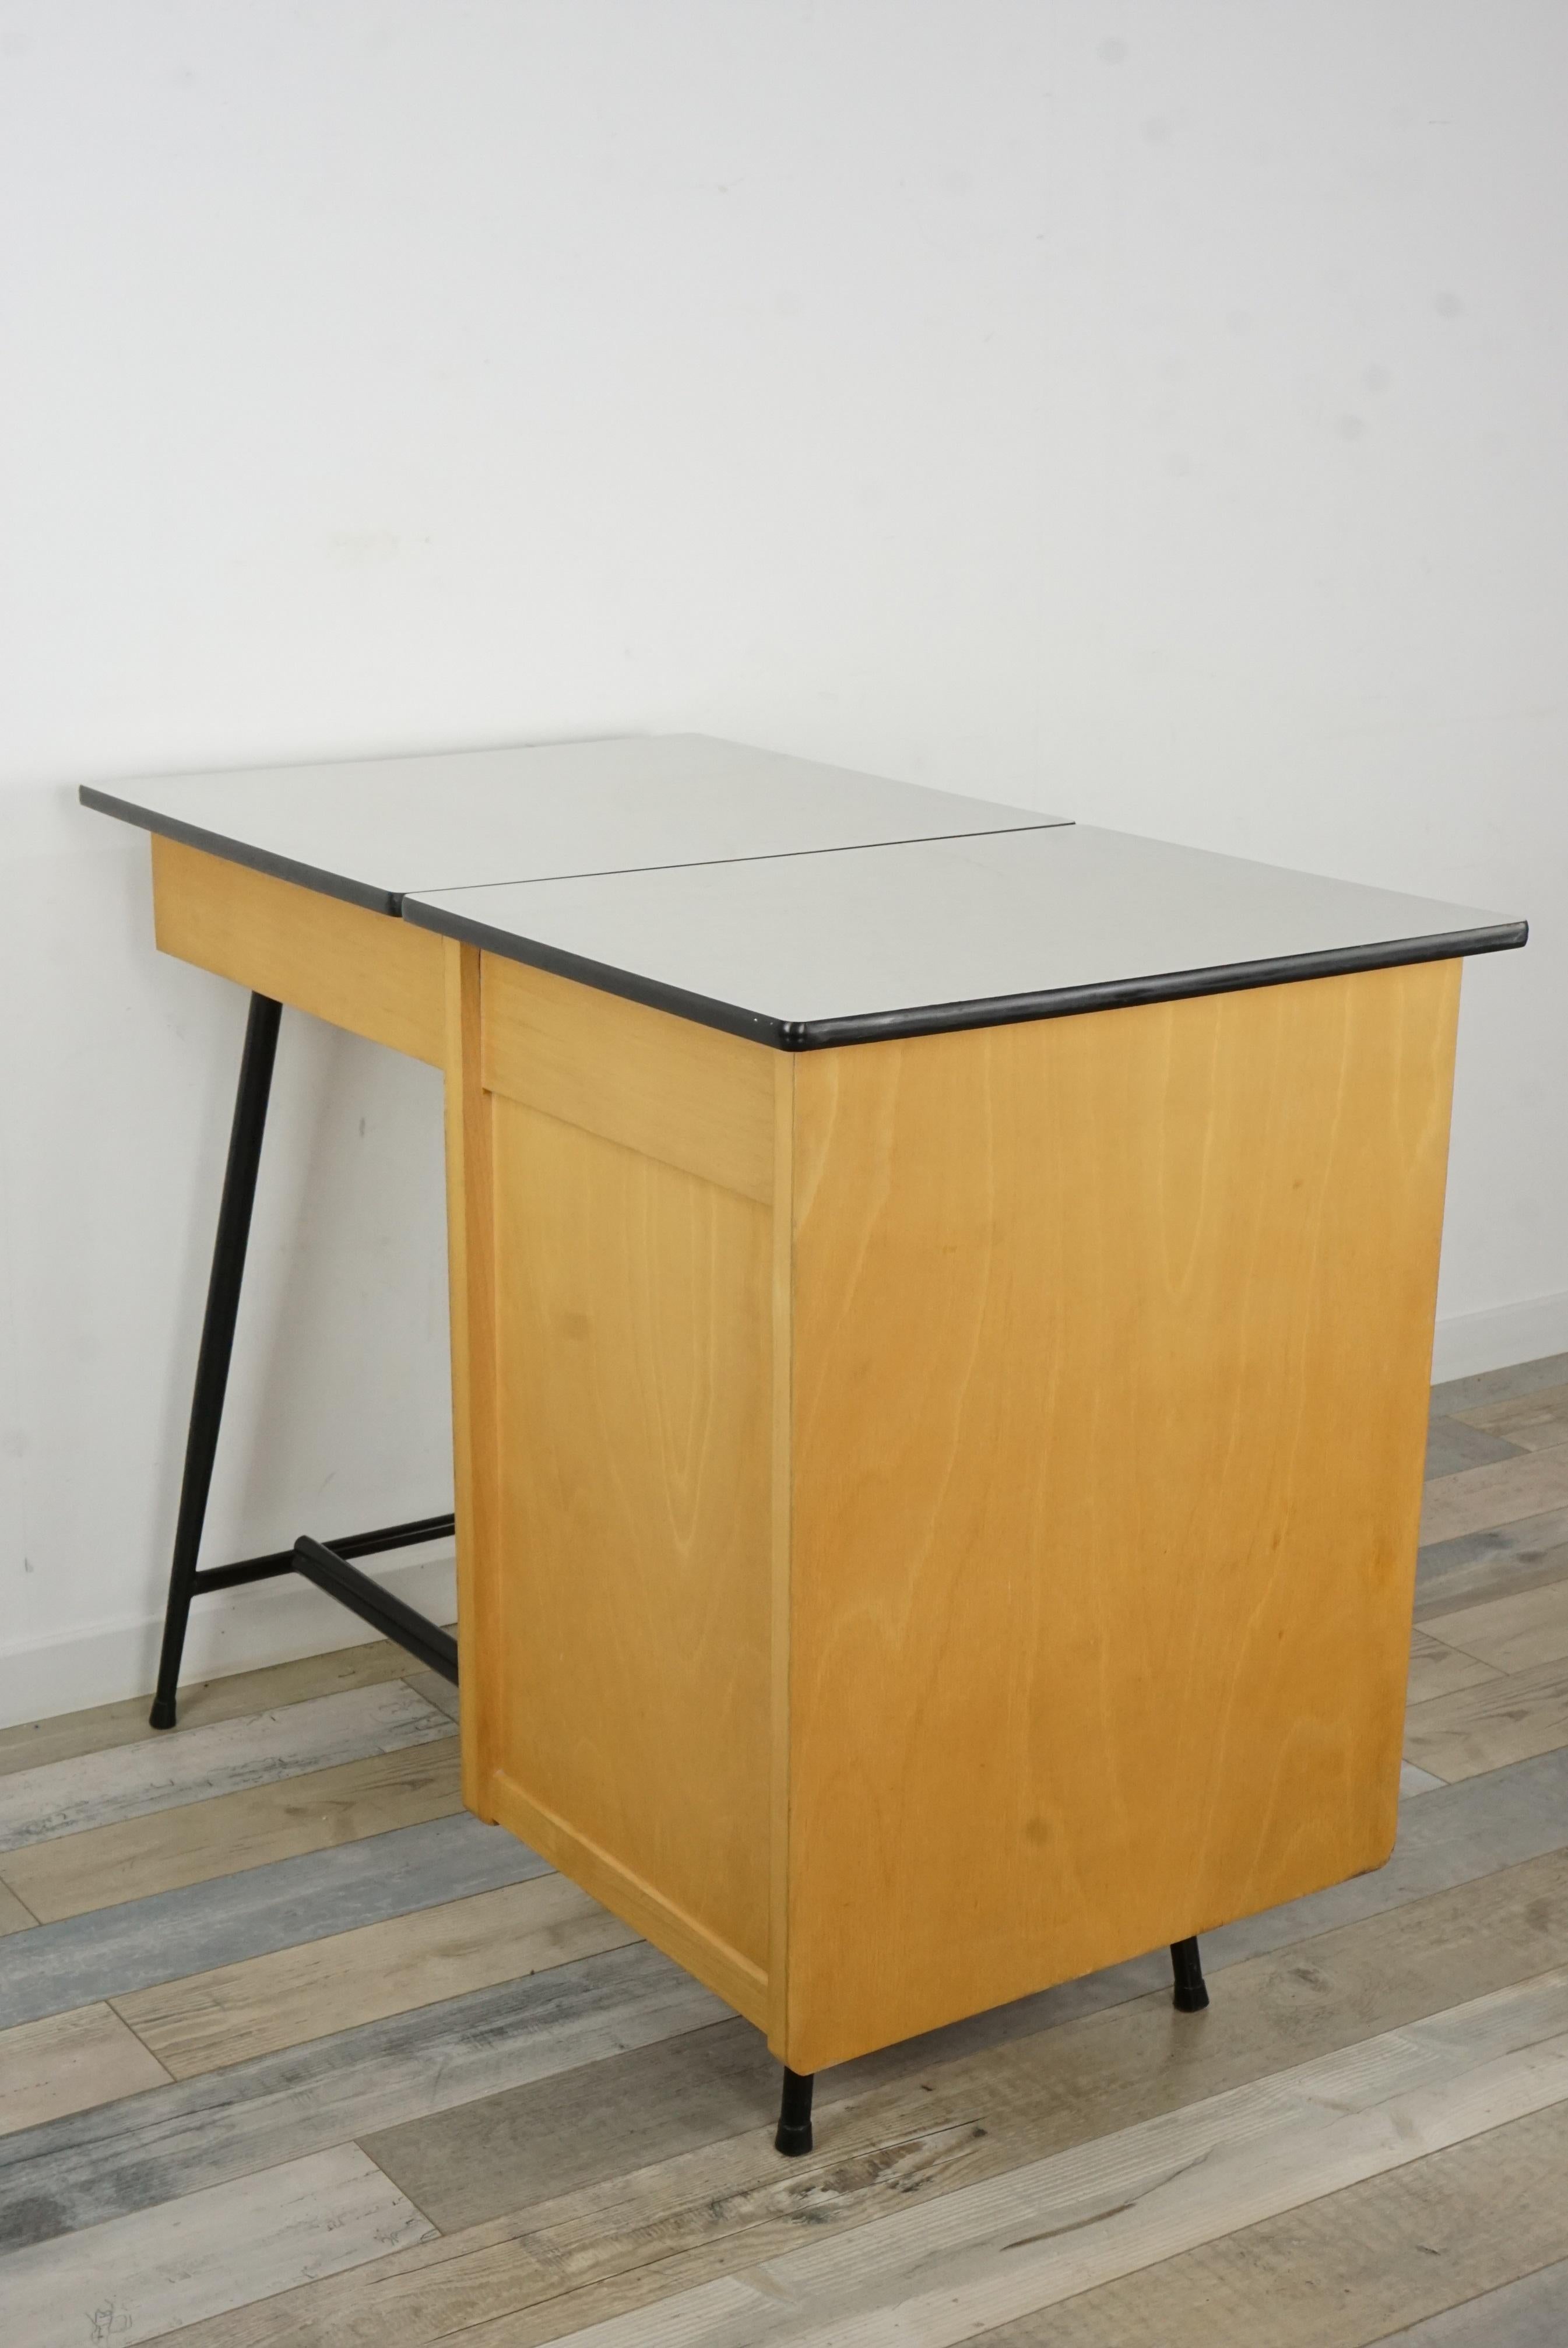 1950s Design Black Metal and Wooden Desk 1